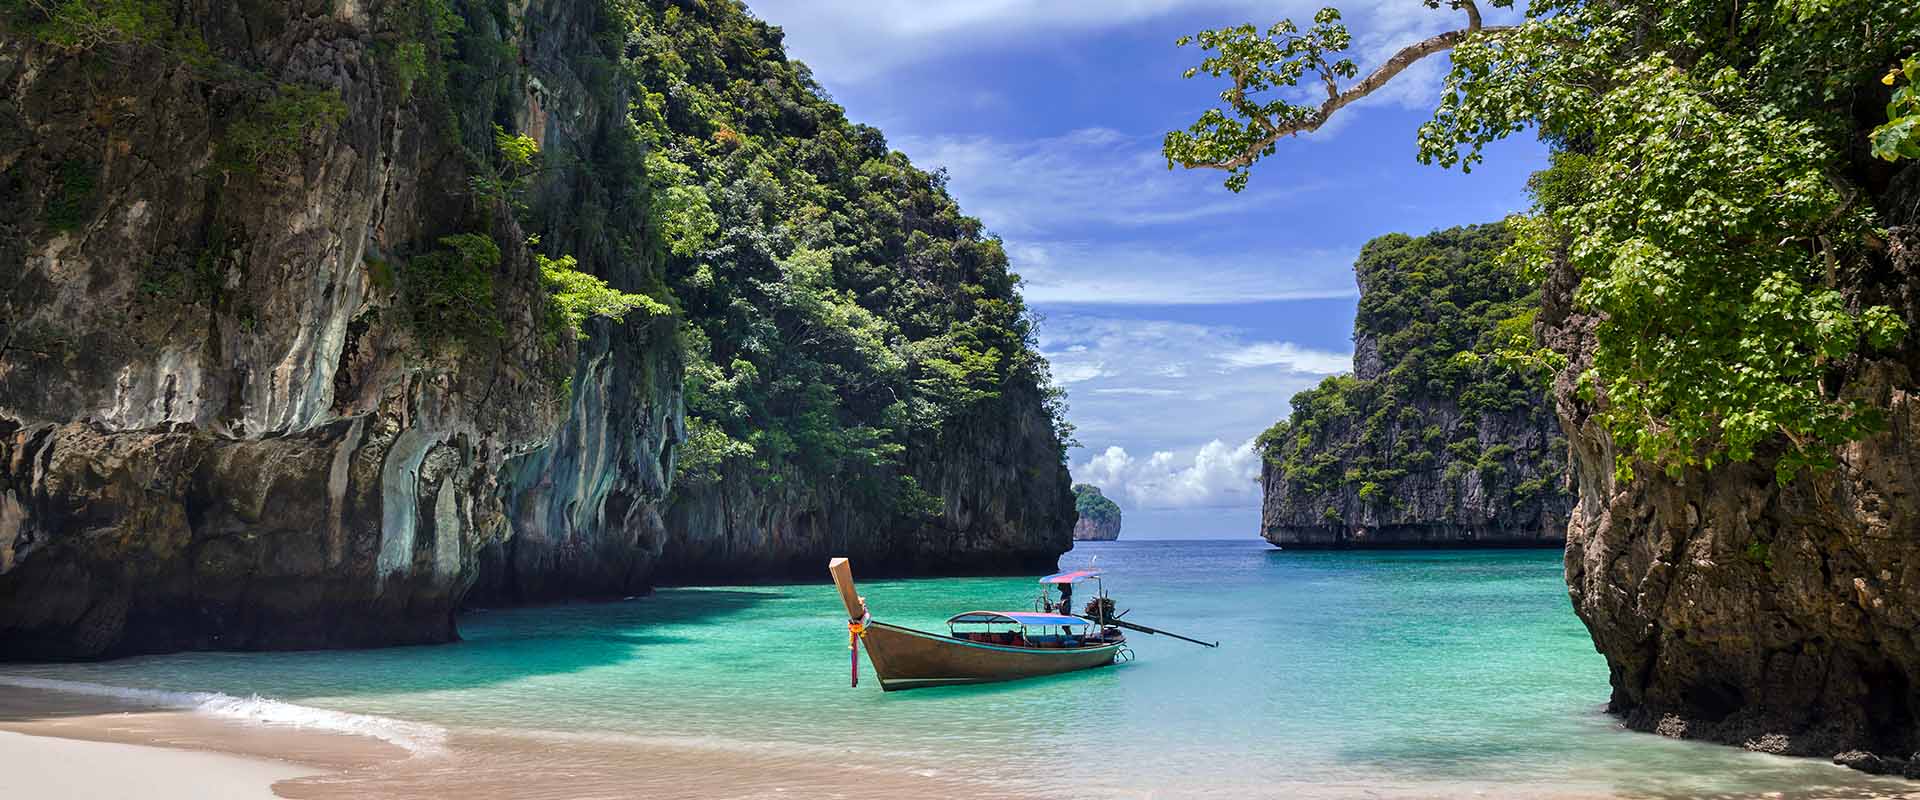 28 Kleinschalige Cruises in Thailand - LiveAboard.com